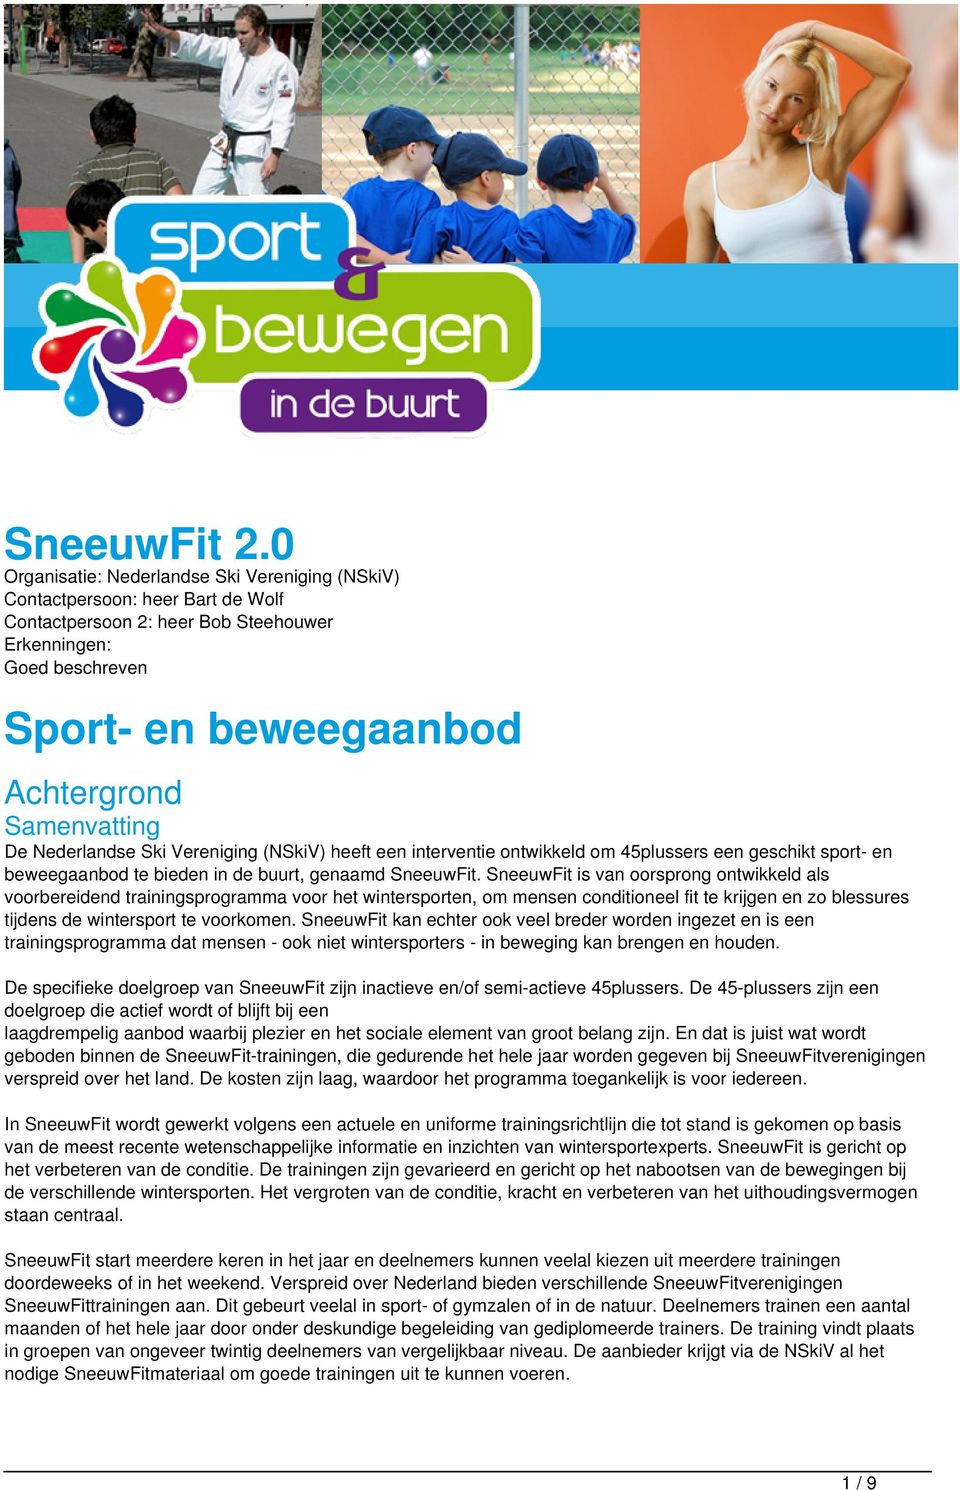 De Nederlandse Ski Vereniging (NSkiV) heeft een interventie ontwikkeld om 45plussers een geschikt sport- en beweegaanbod te bieden in de buurt, genaamd SneeuwFit.